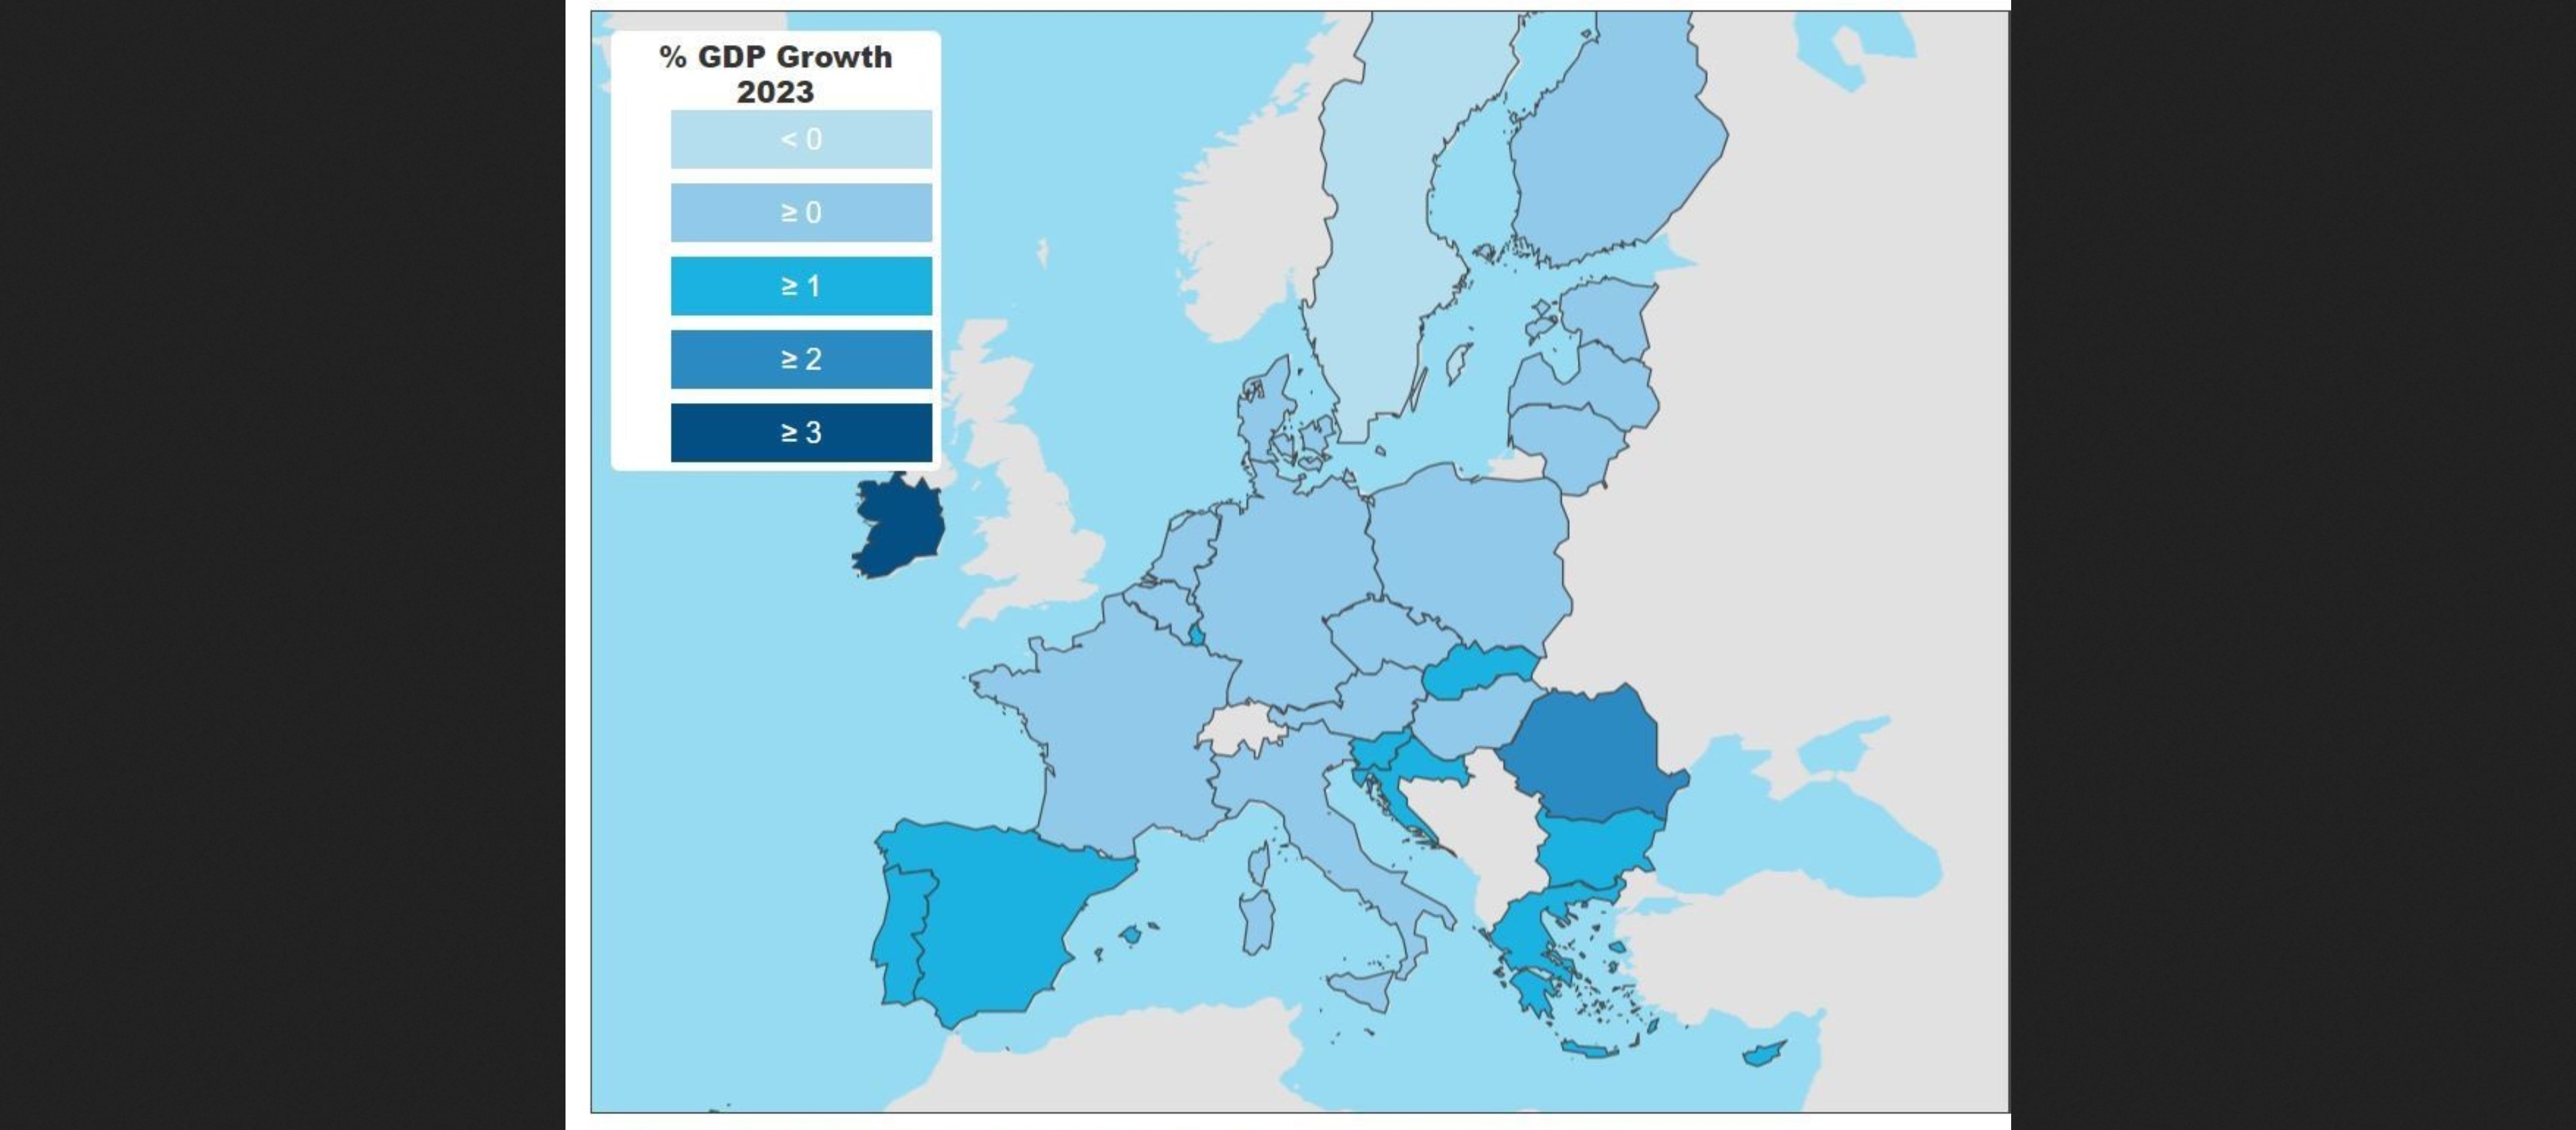 Путин на Евразийском экономическом форуме заявил, что в Евросоюзе ожидается падение ВВП. На самом деле ВВП ЕС растет